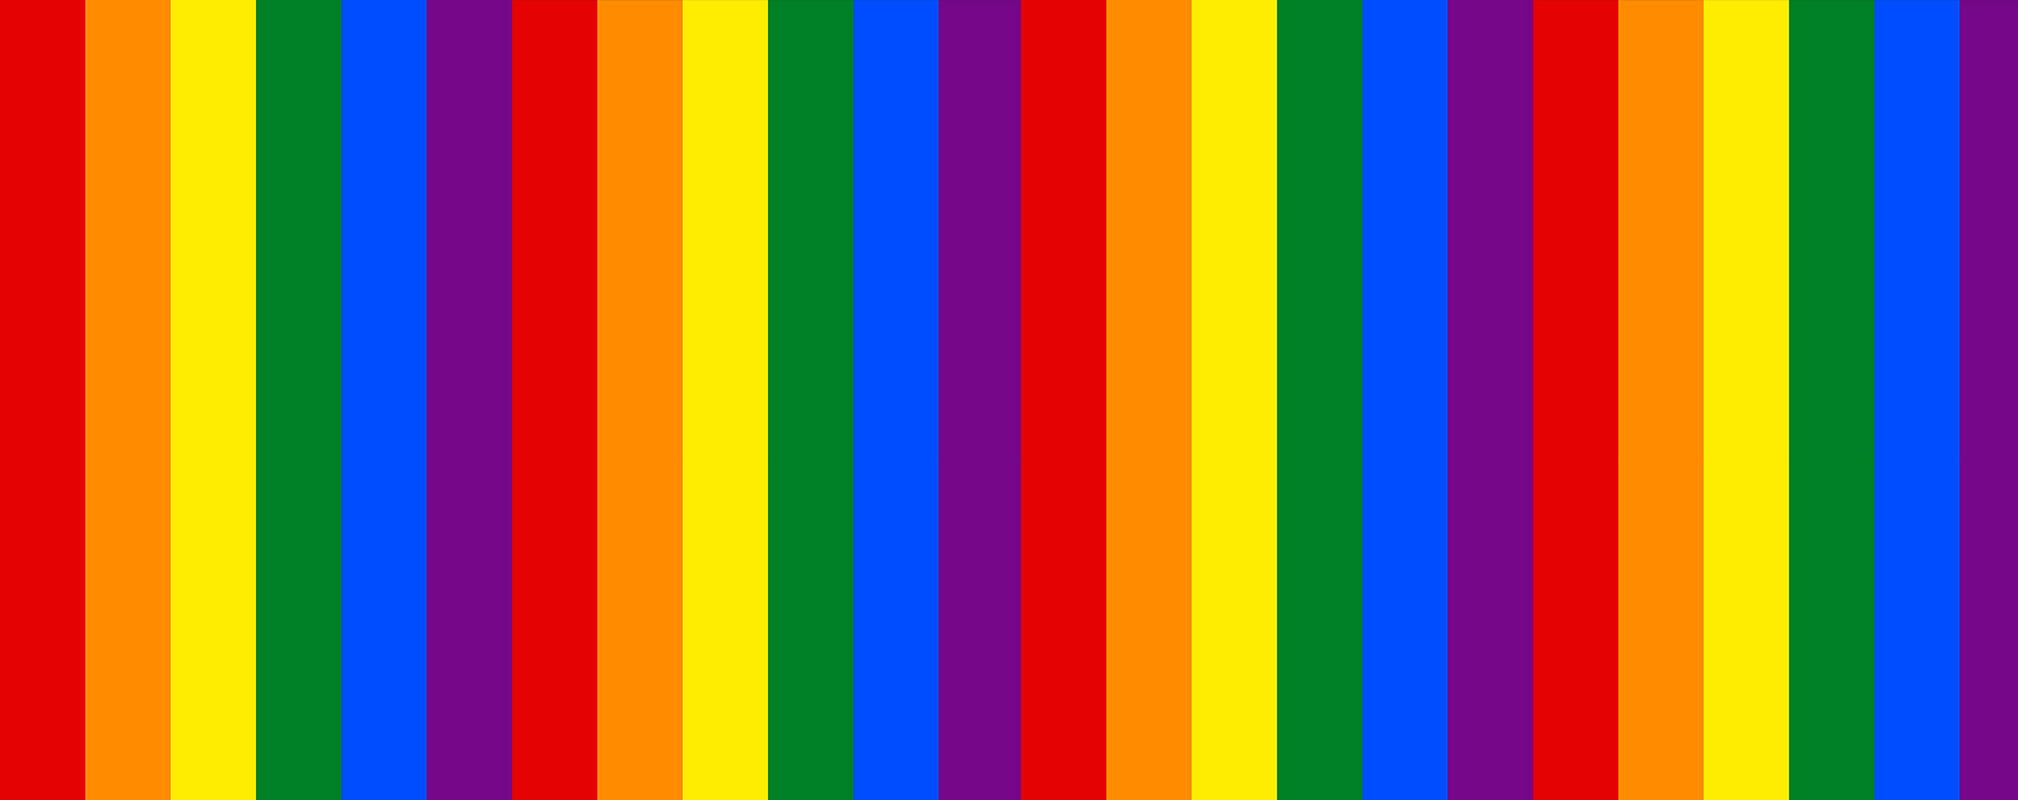 gay pride colors pms